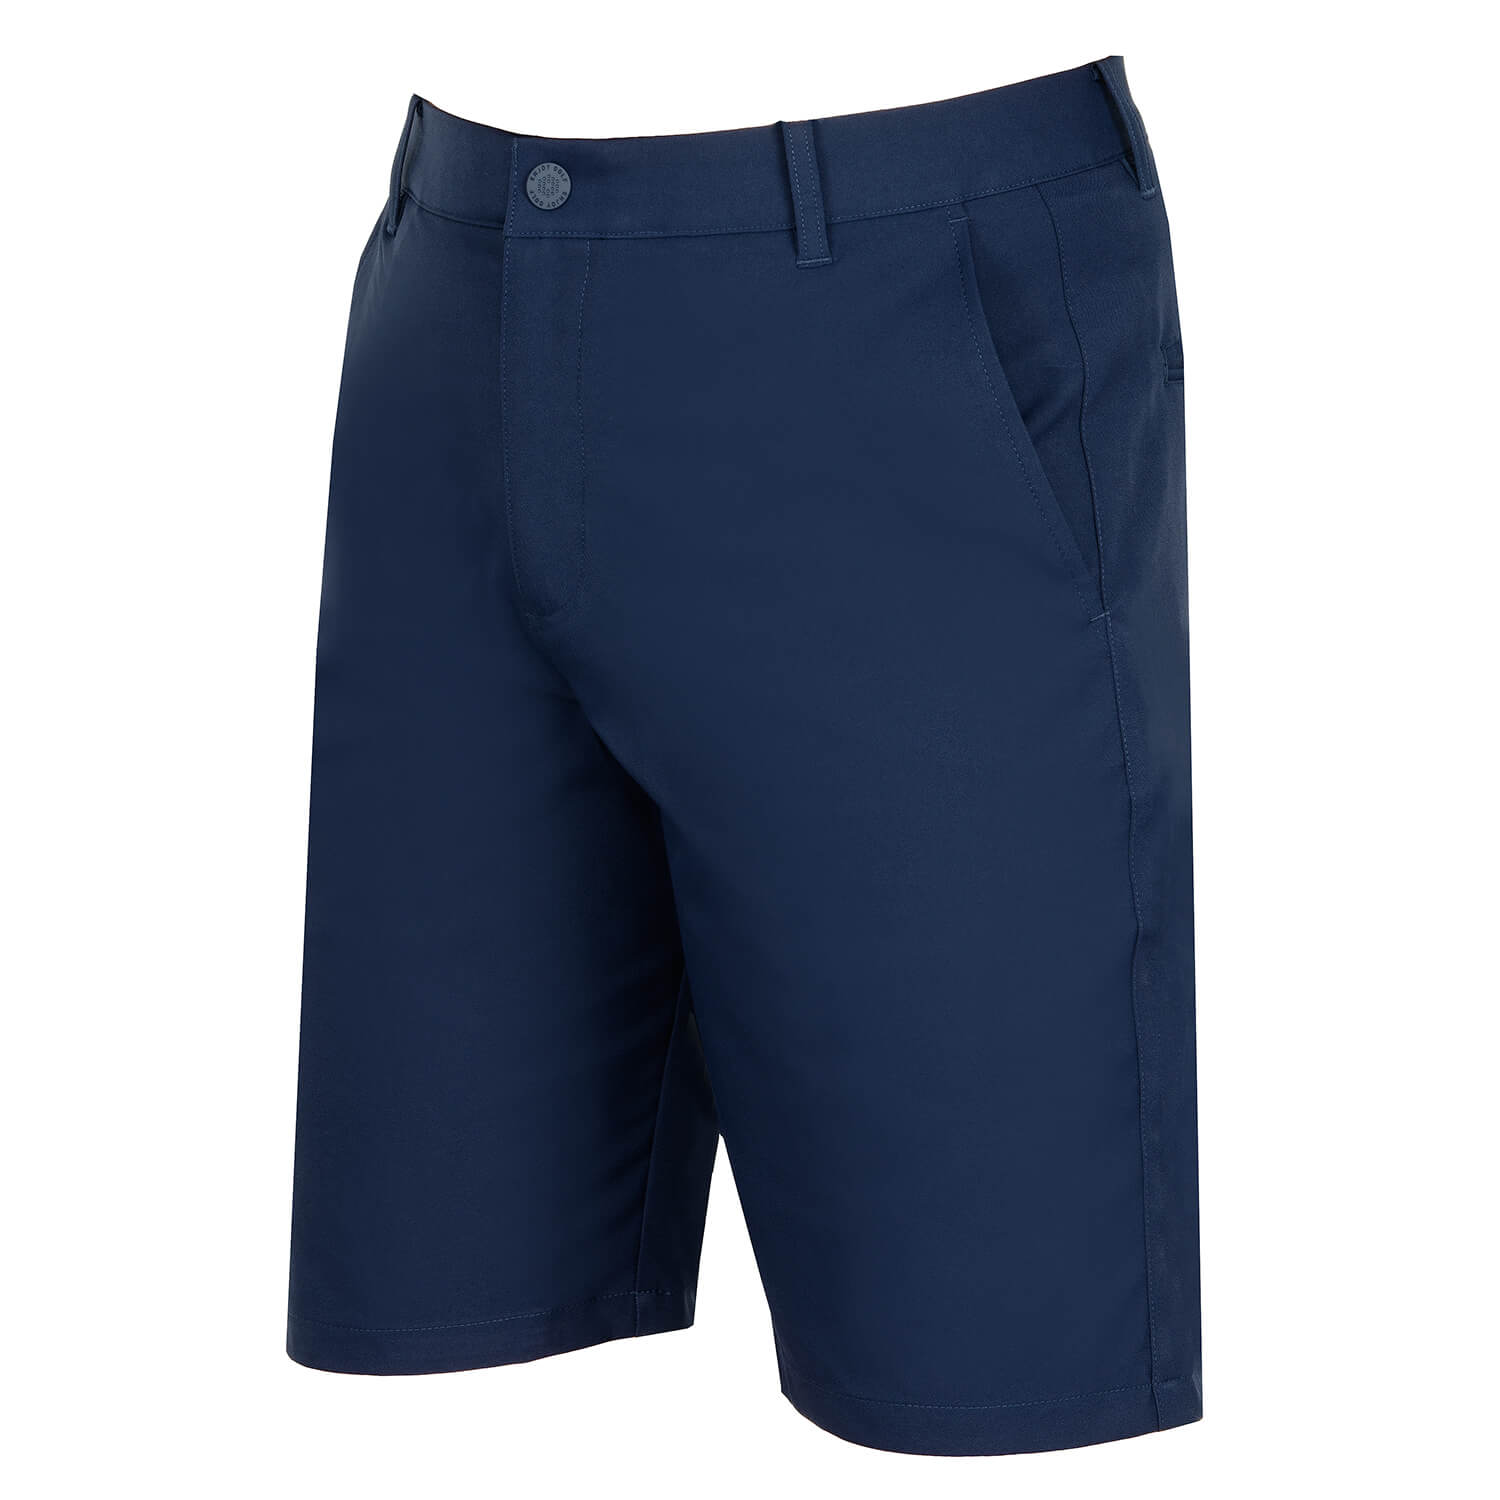 Puma Jackpot Golf Shorts Navy Blazer | Scottsdale Golf